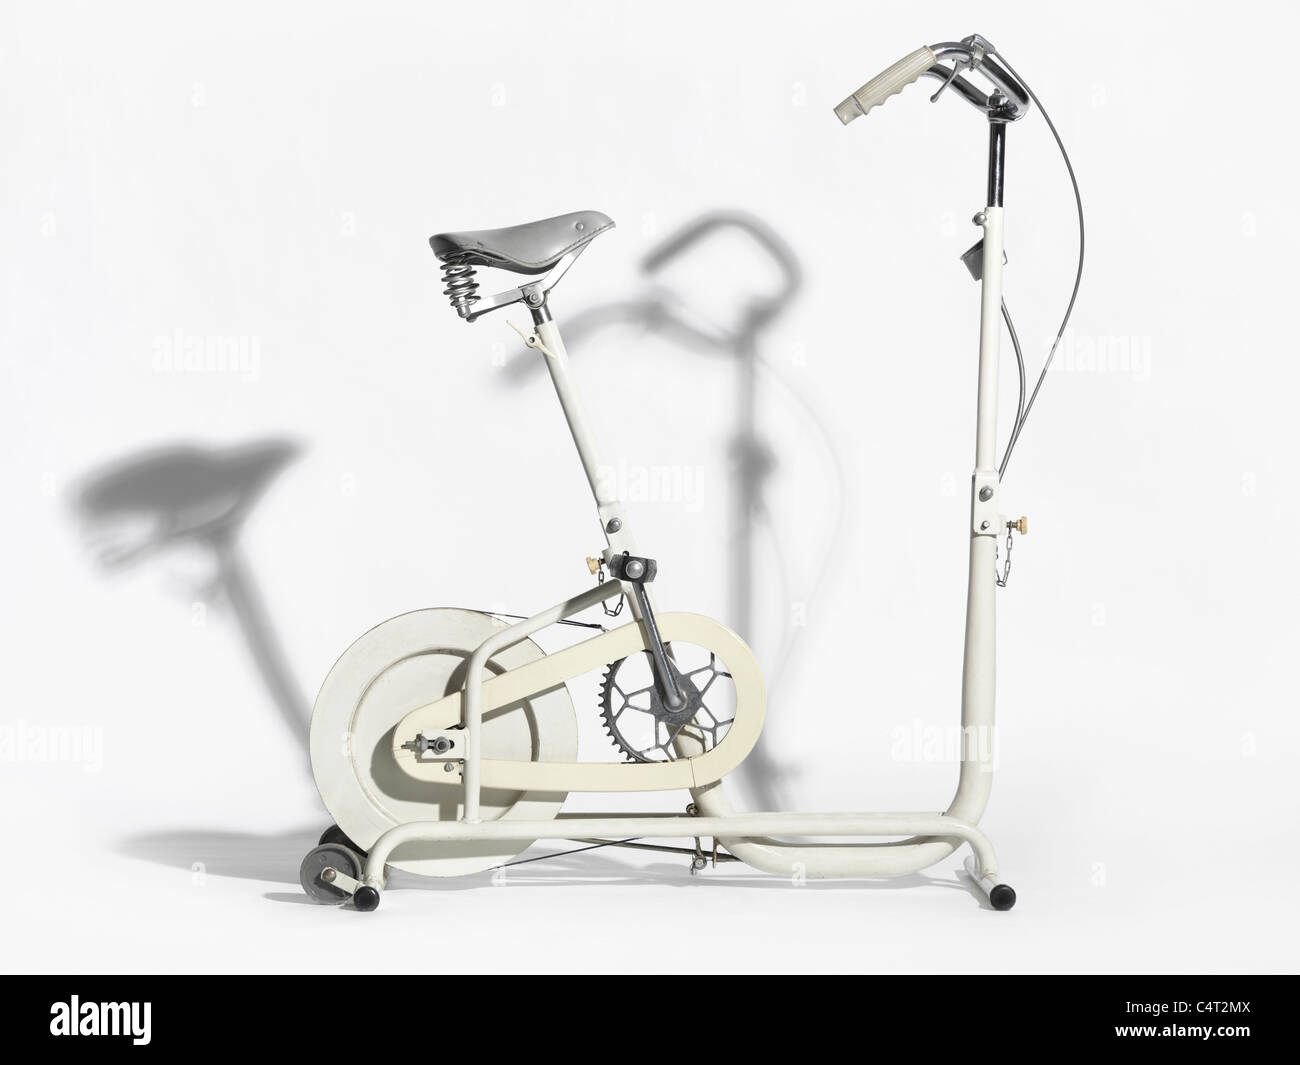 Retro exercise bike isolated on white background Stock Photo